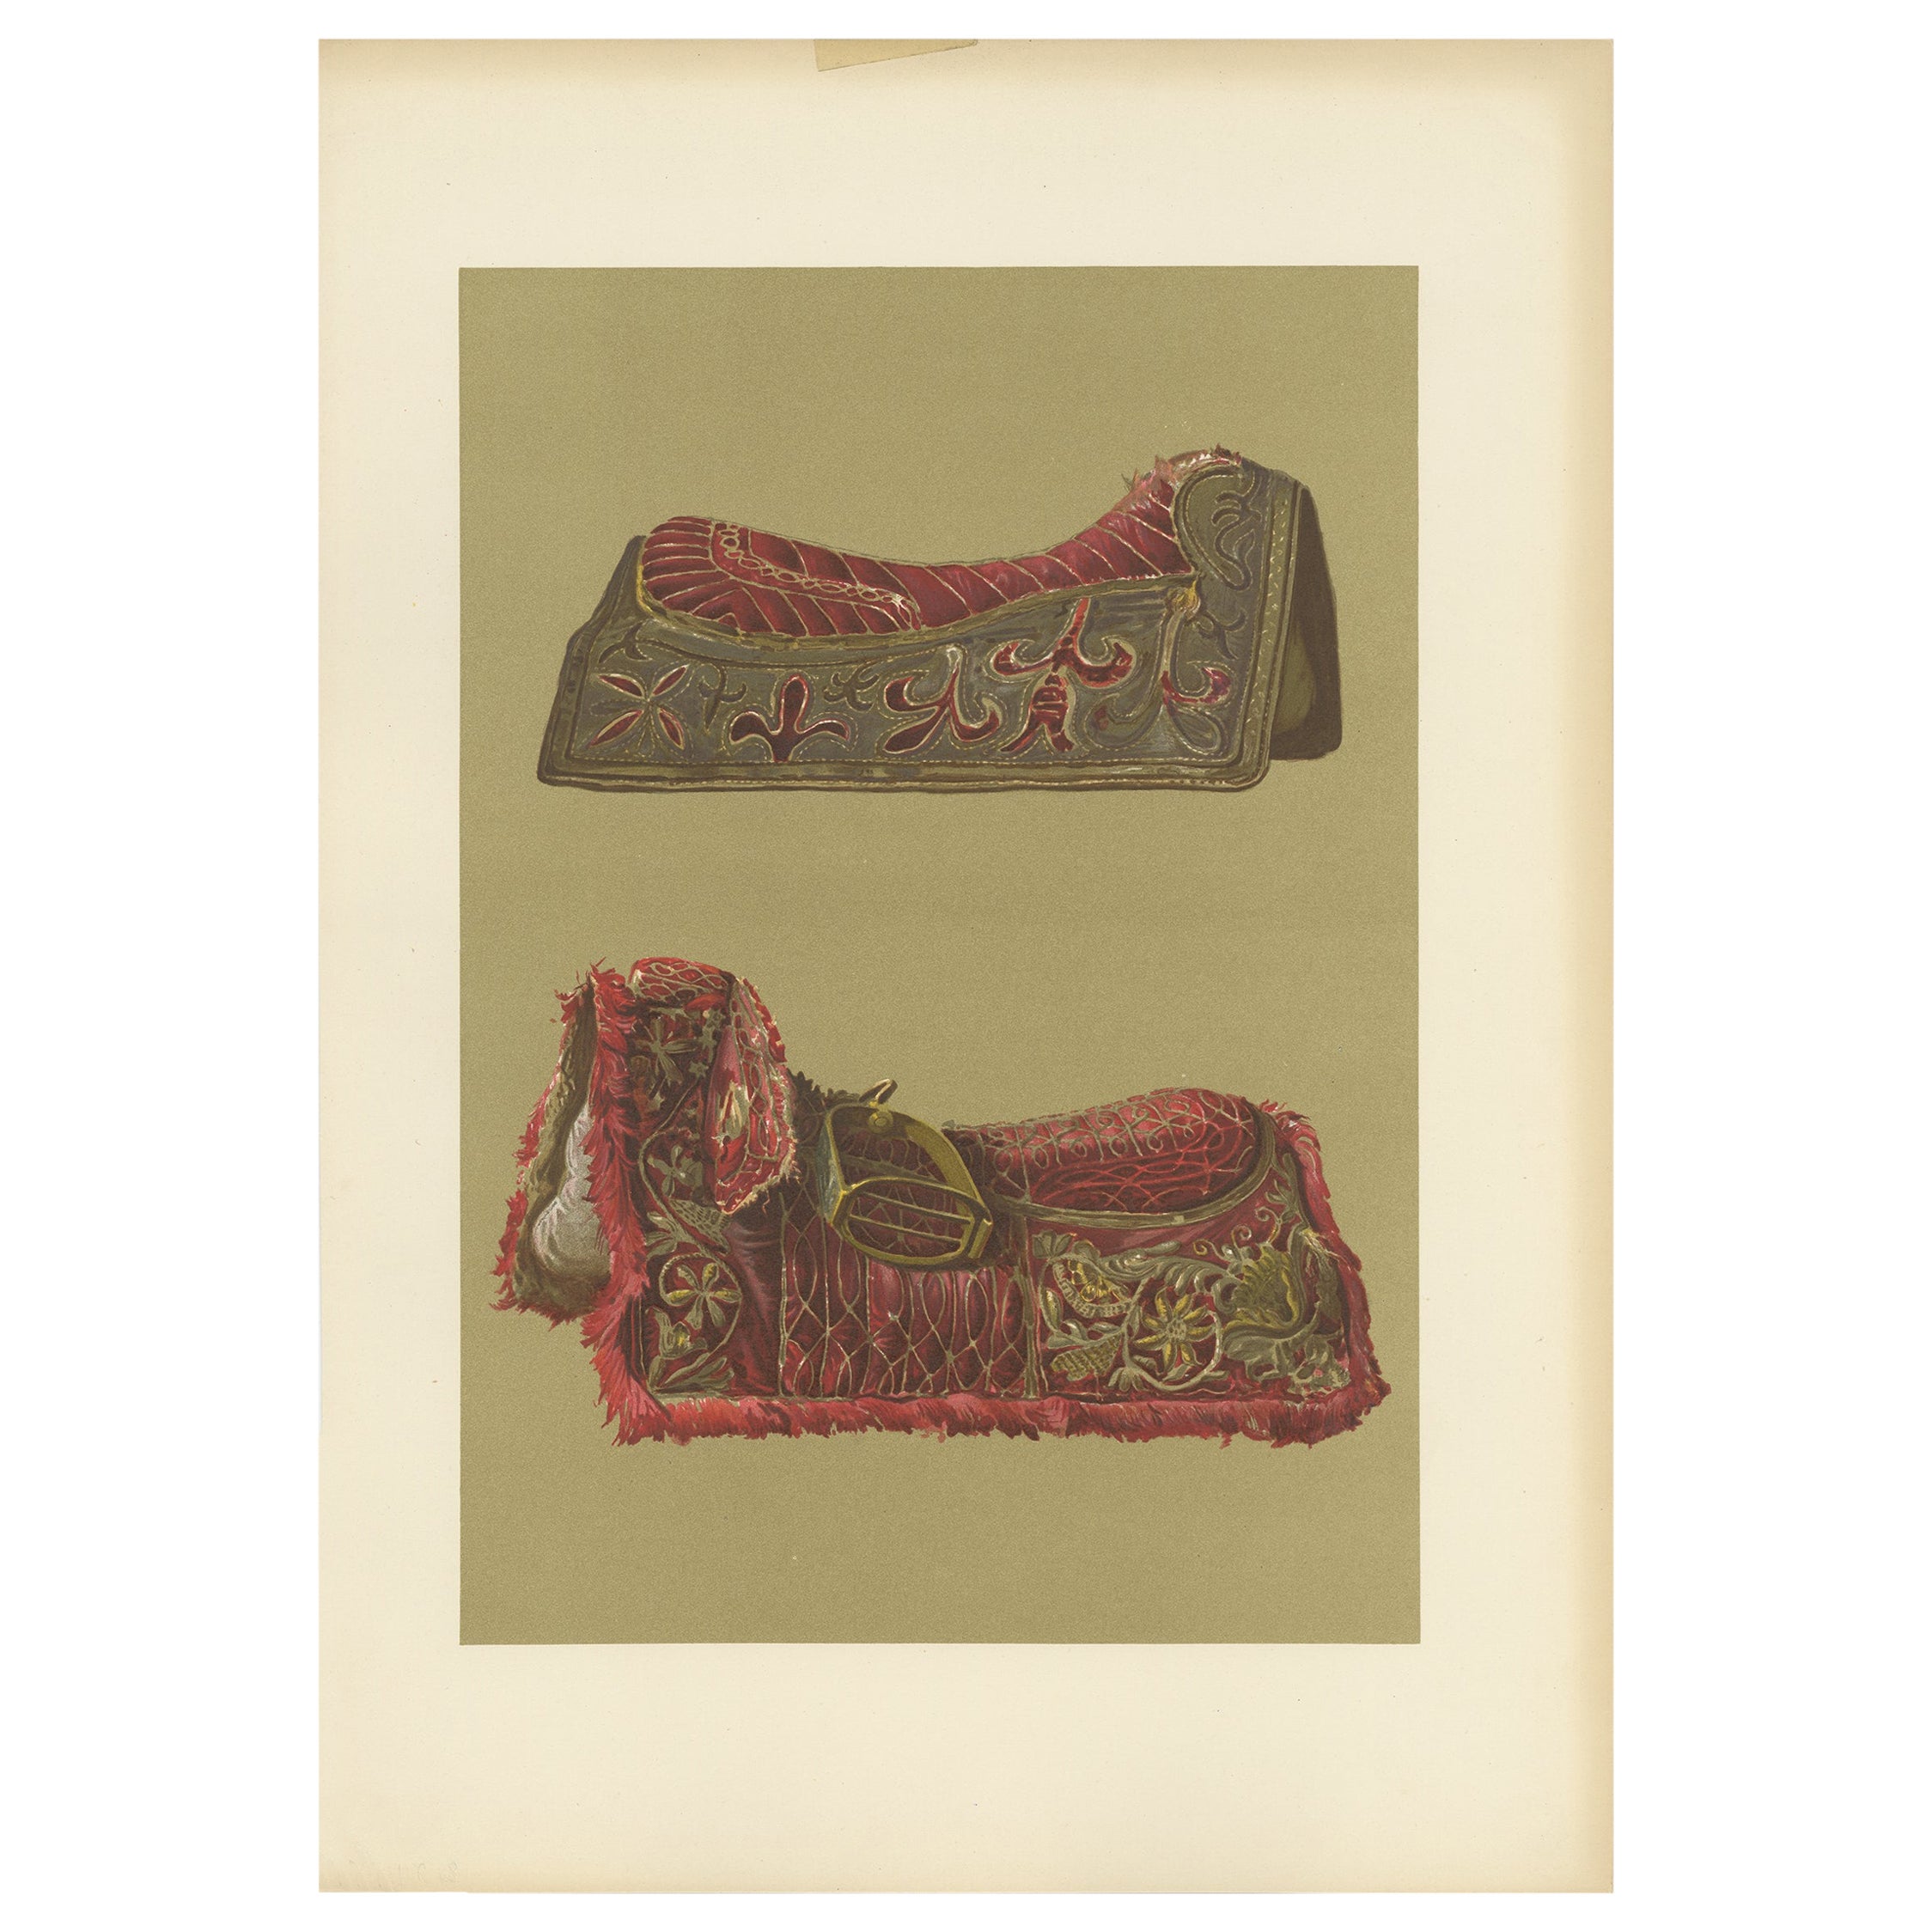 Antique Print of Velvet Saddles by Gibb, 1890